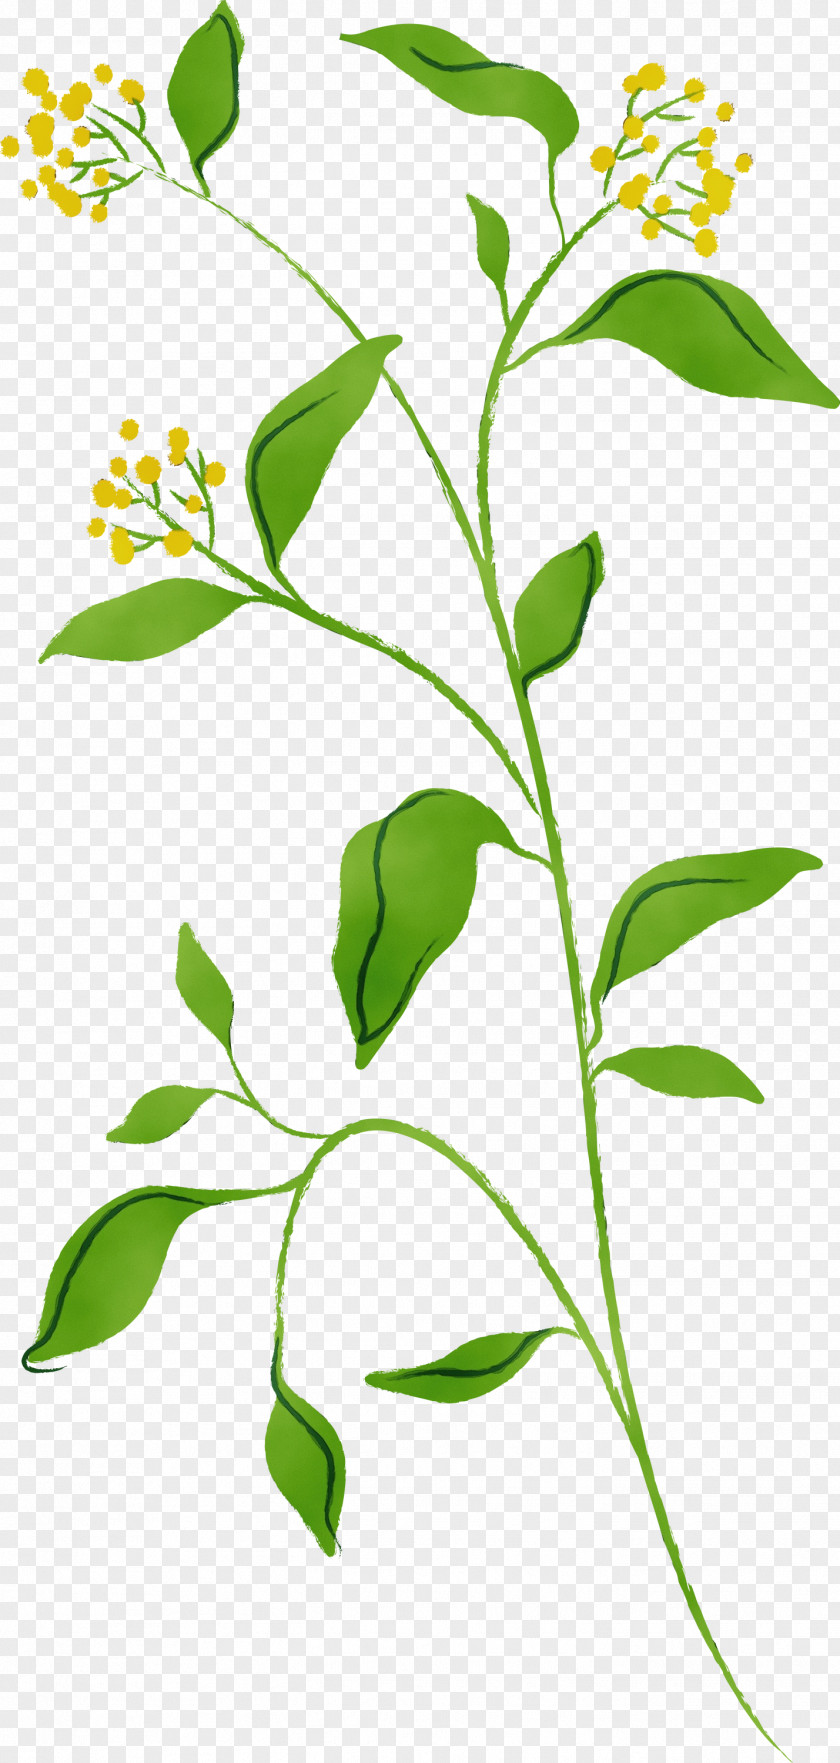 Flower Plant Leaf Stem Tree PNG